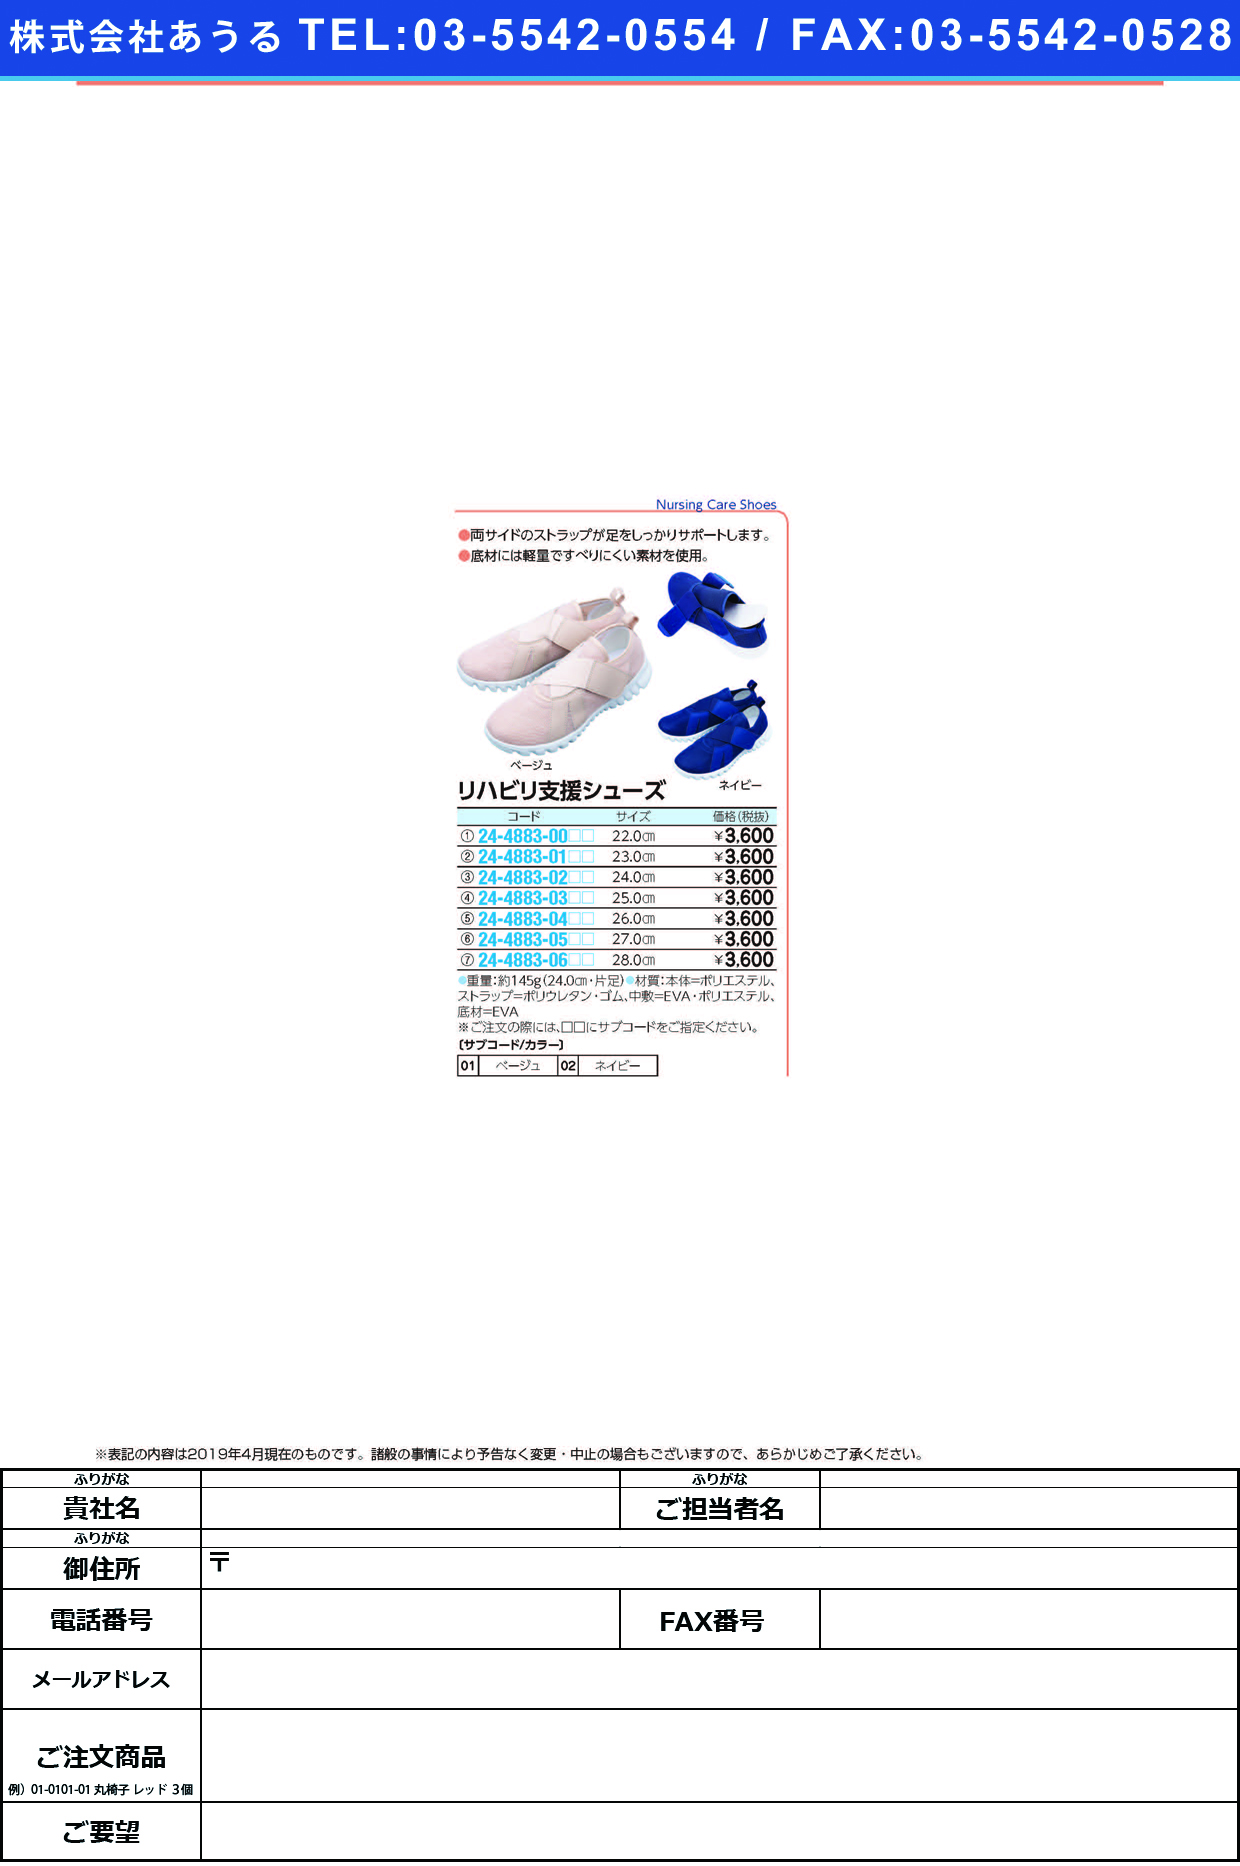 (24-4883-05)リハビリ支援シューズ 27.0CM ﾘﾊﾋﾞﾘｼｴﾝｼｭｰｽﾞ ベージュ【1足単位】【2019年カタログ商品】